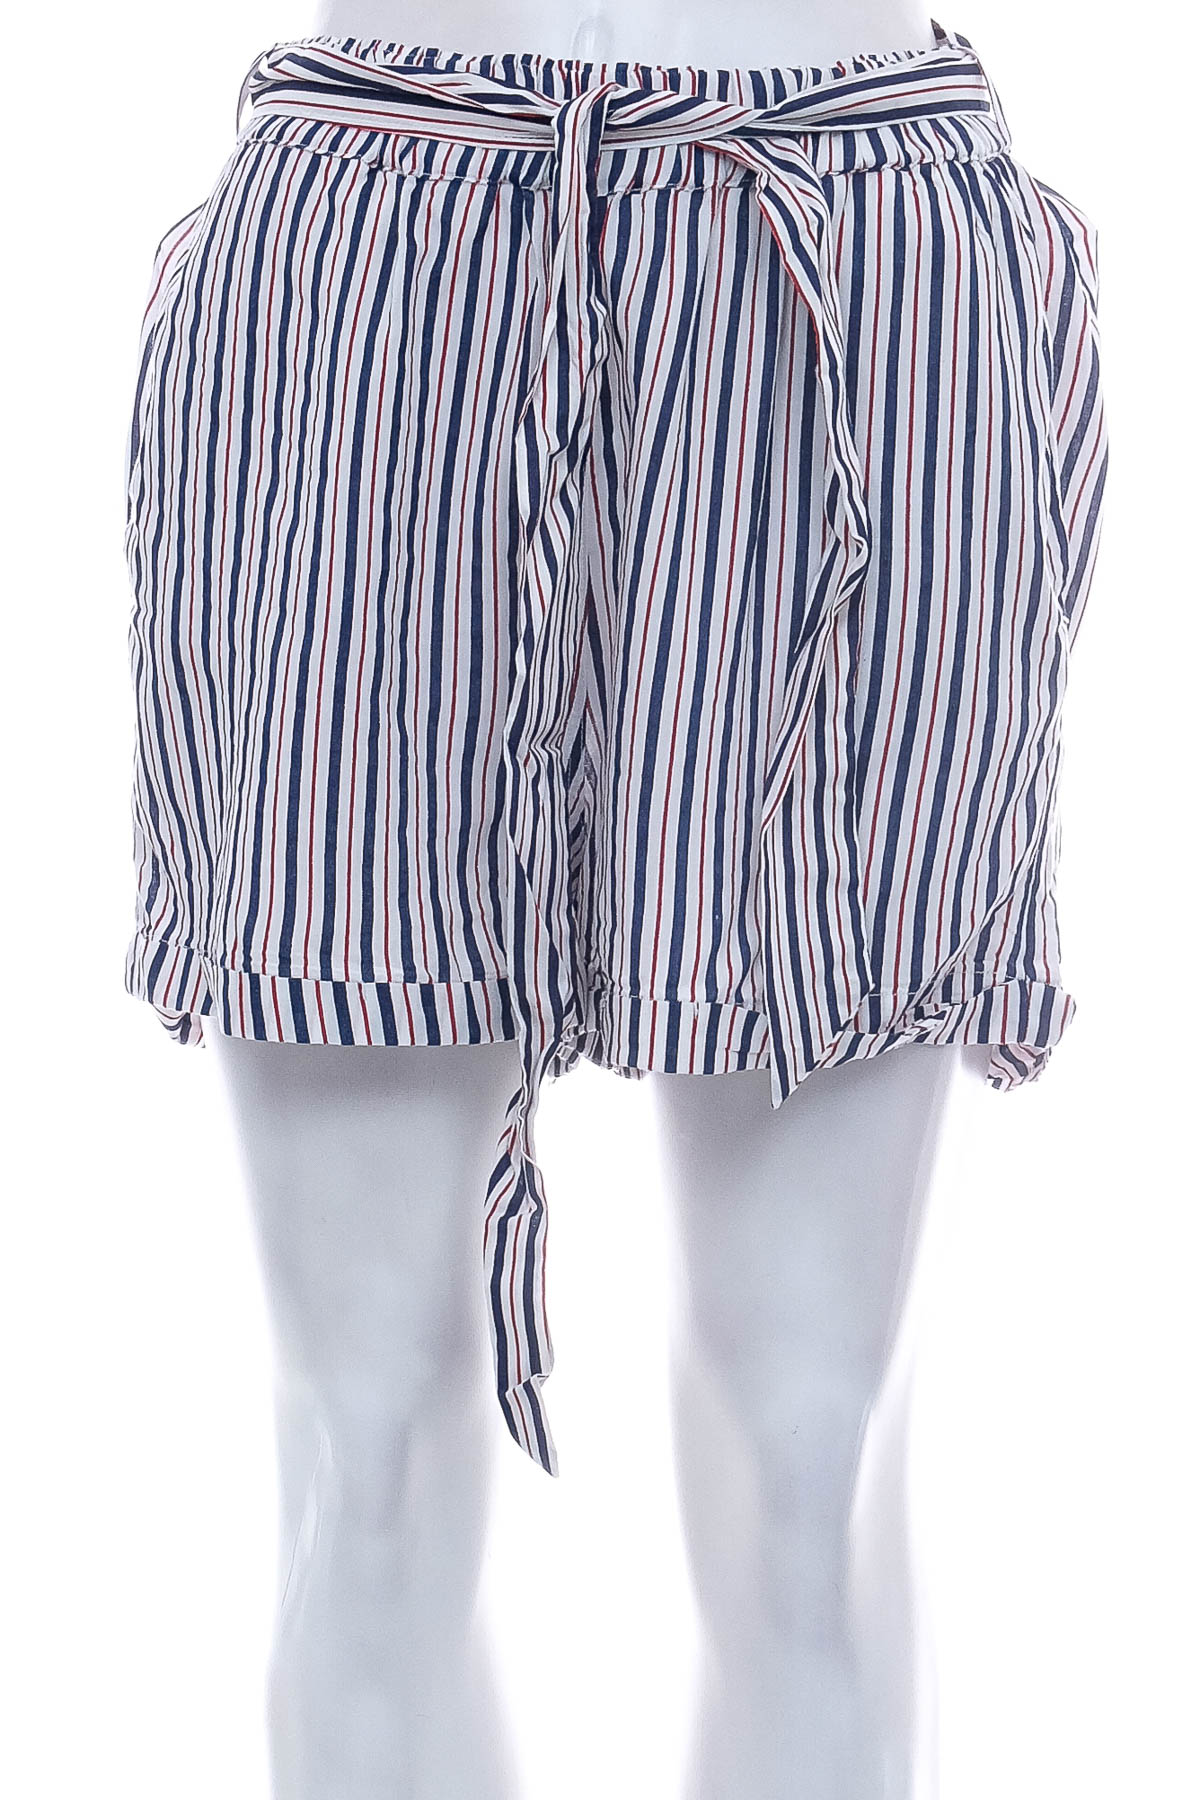 Krótkie spodnie damskie - Inspired by Veritas - 0